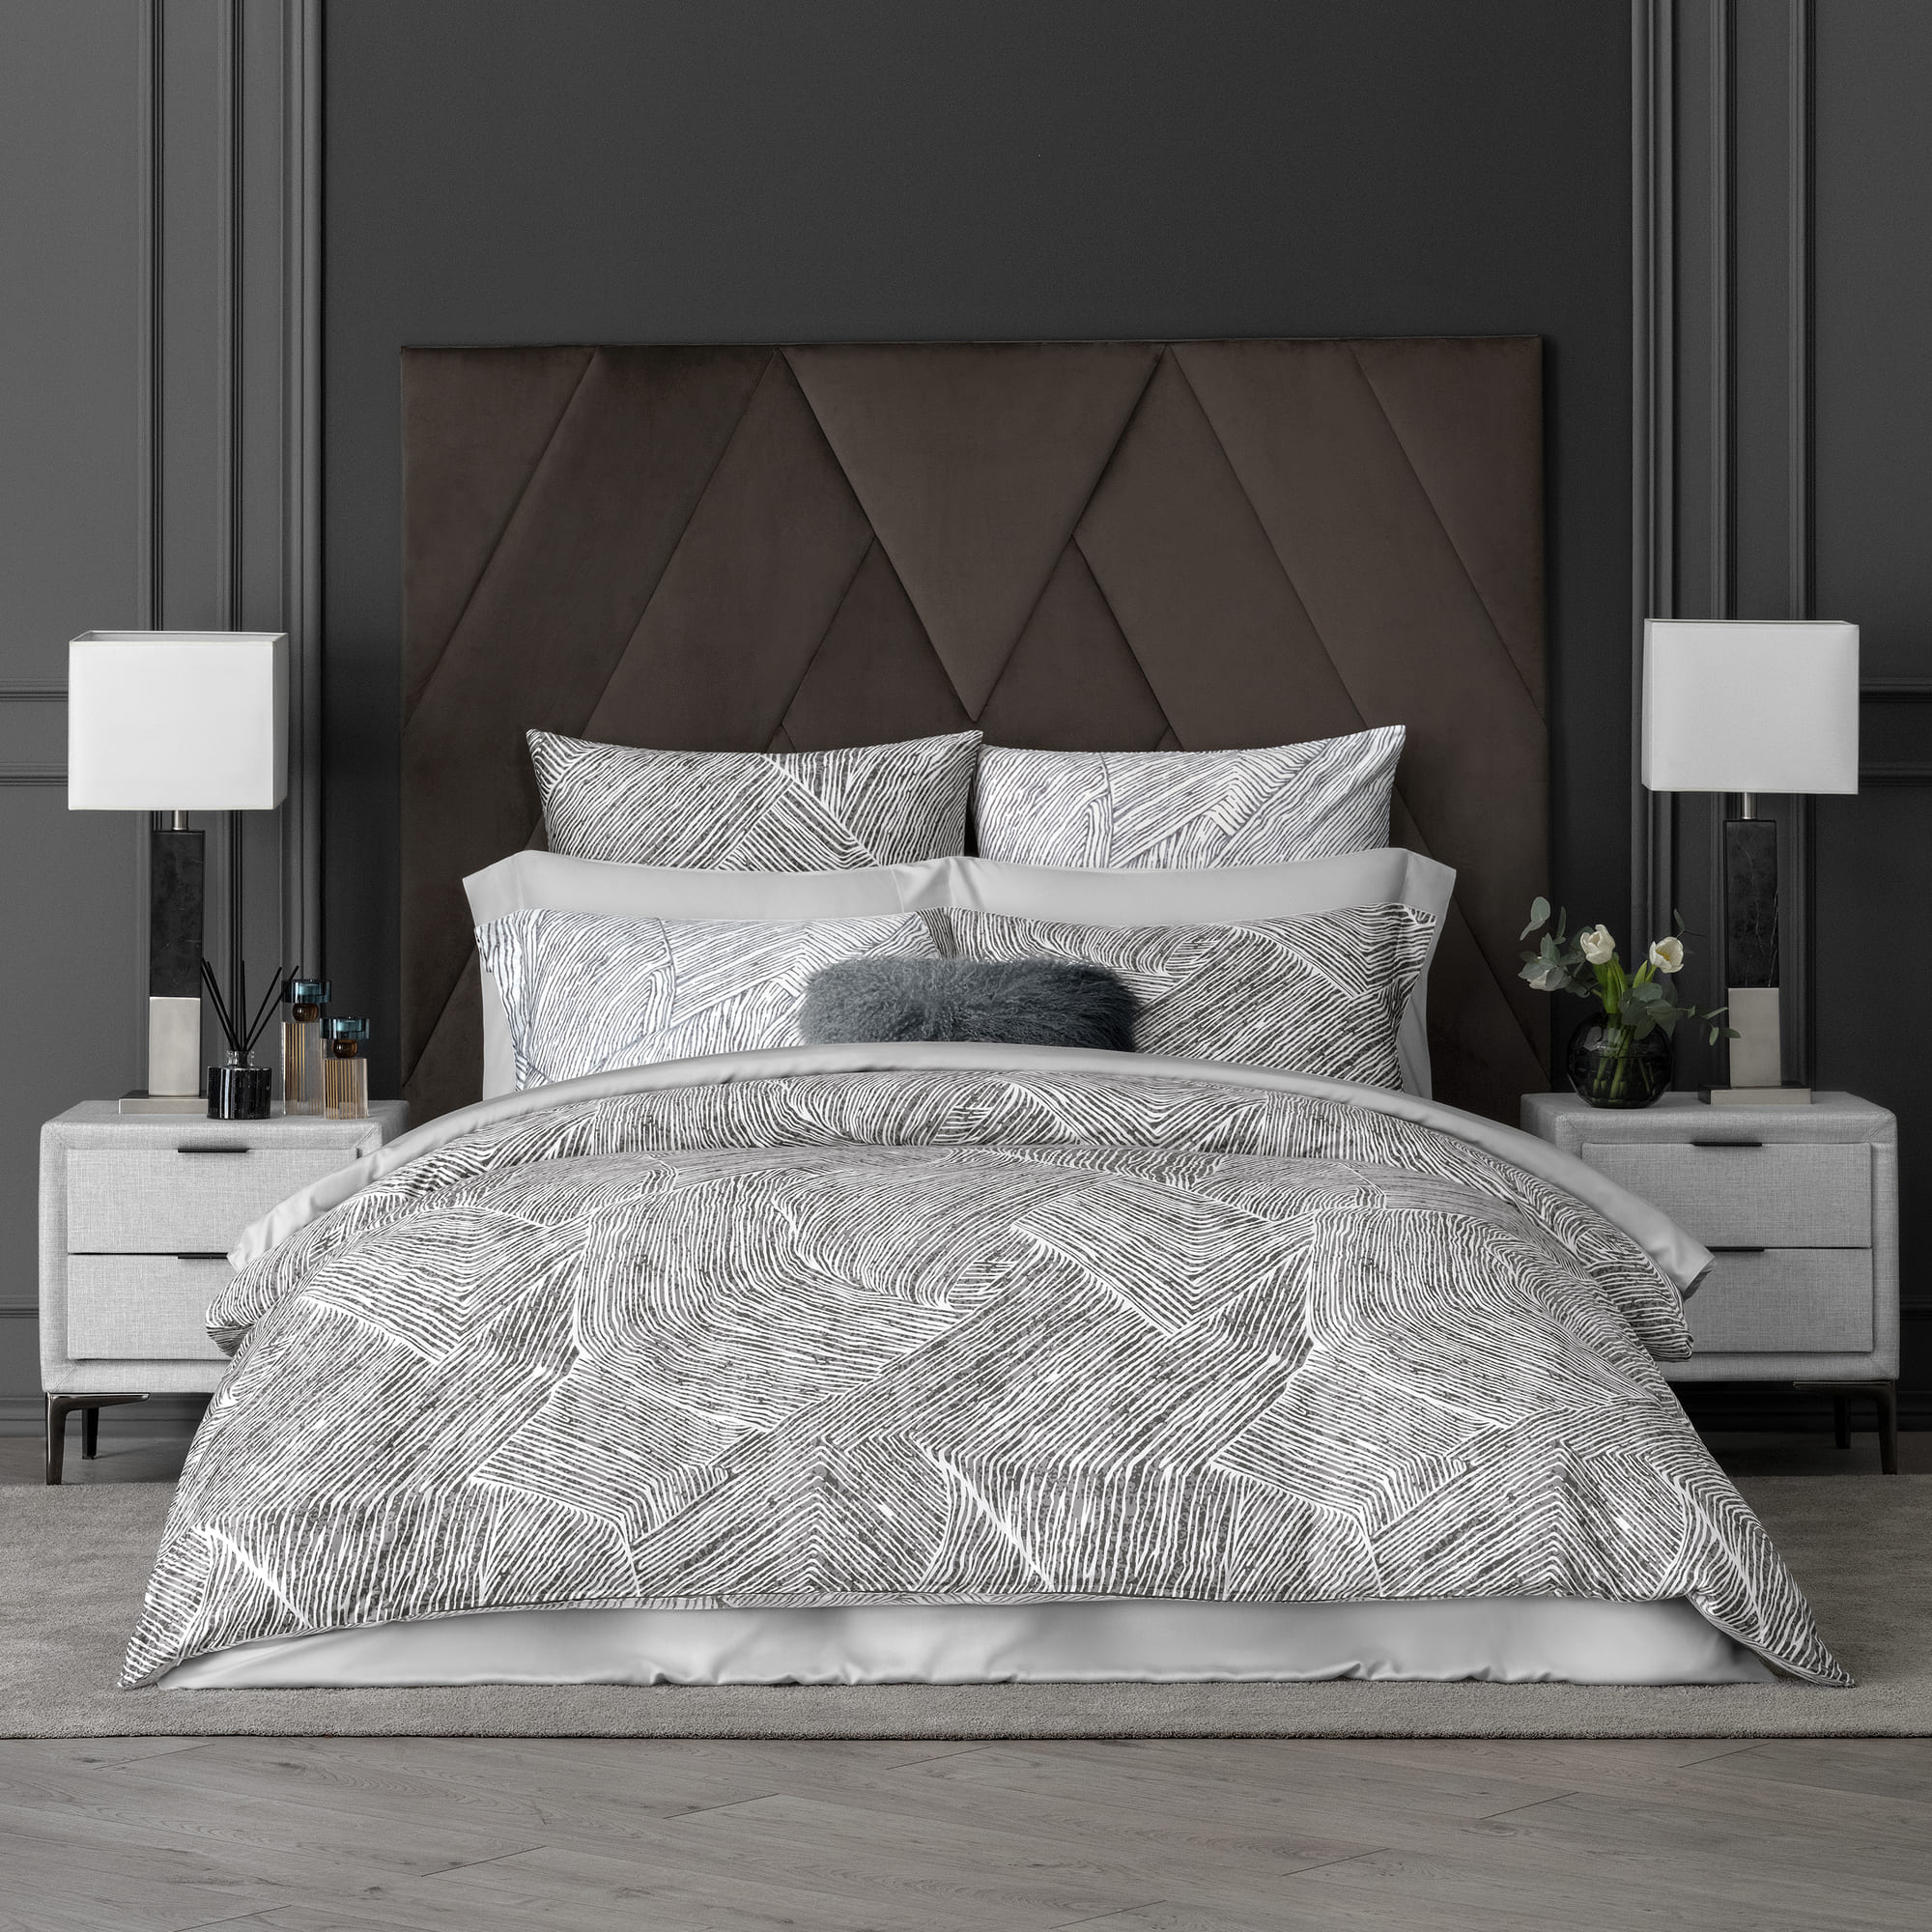 Комплект постельного белья Togas Ферранте серый Полуторный, размер Полуторный - фото 1